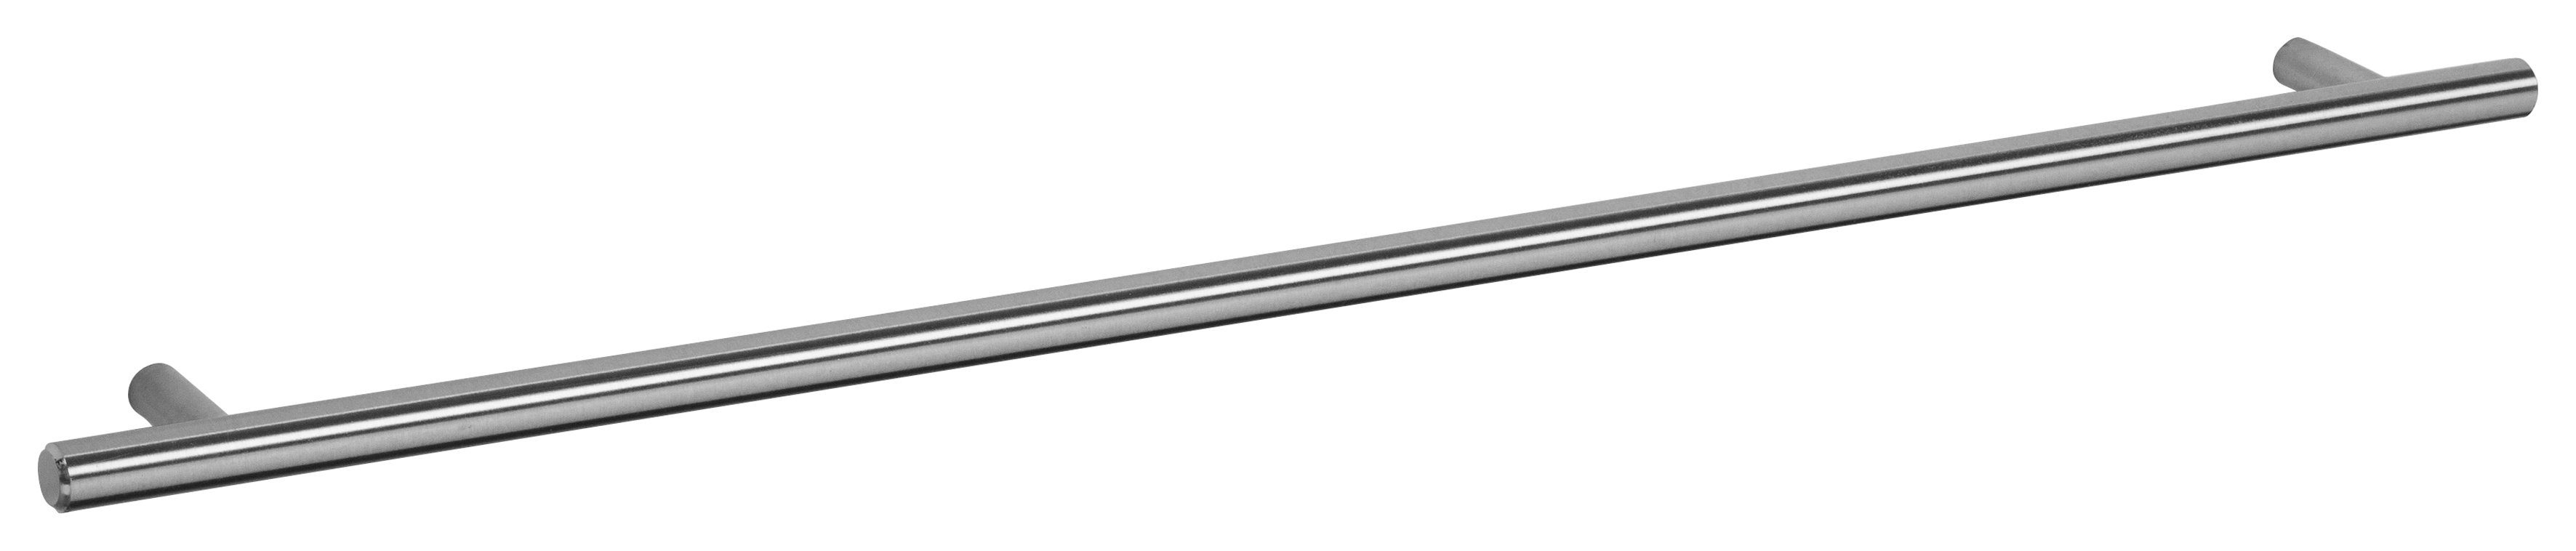 OPTIFIT Kühlumbauschrank Bern 60 | Stellfüßen Hochglanz/akaziefarben hoch, cm breit, höhenverstellbaren mit cm 212 grau akaziefarben